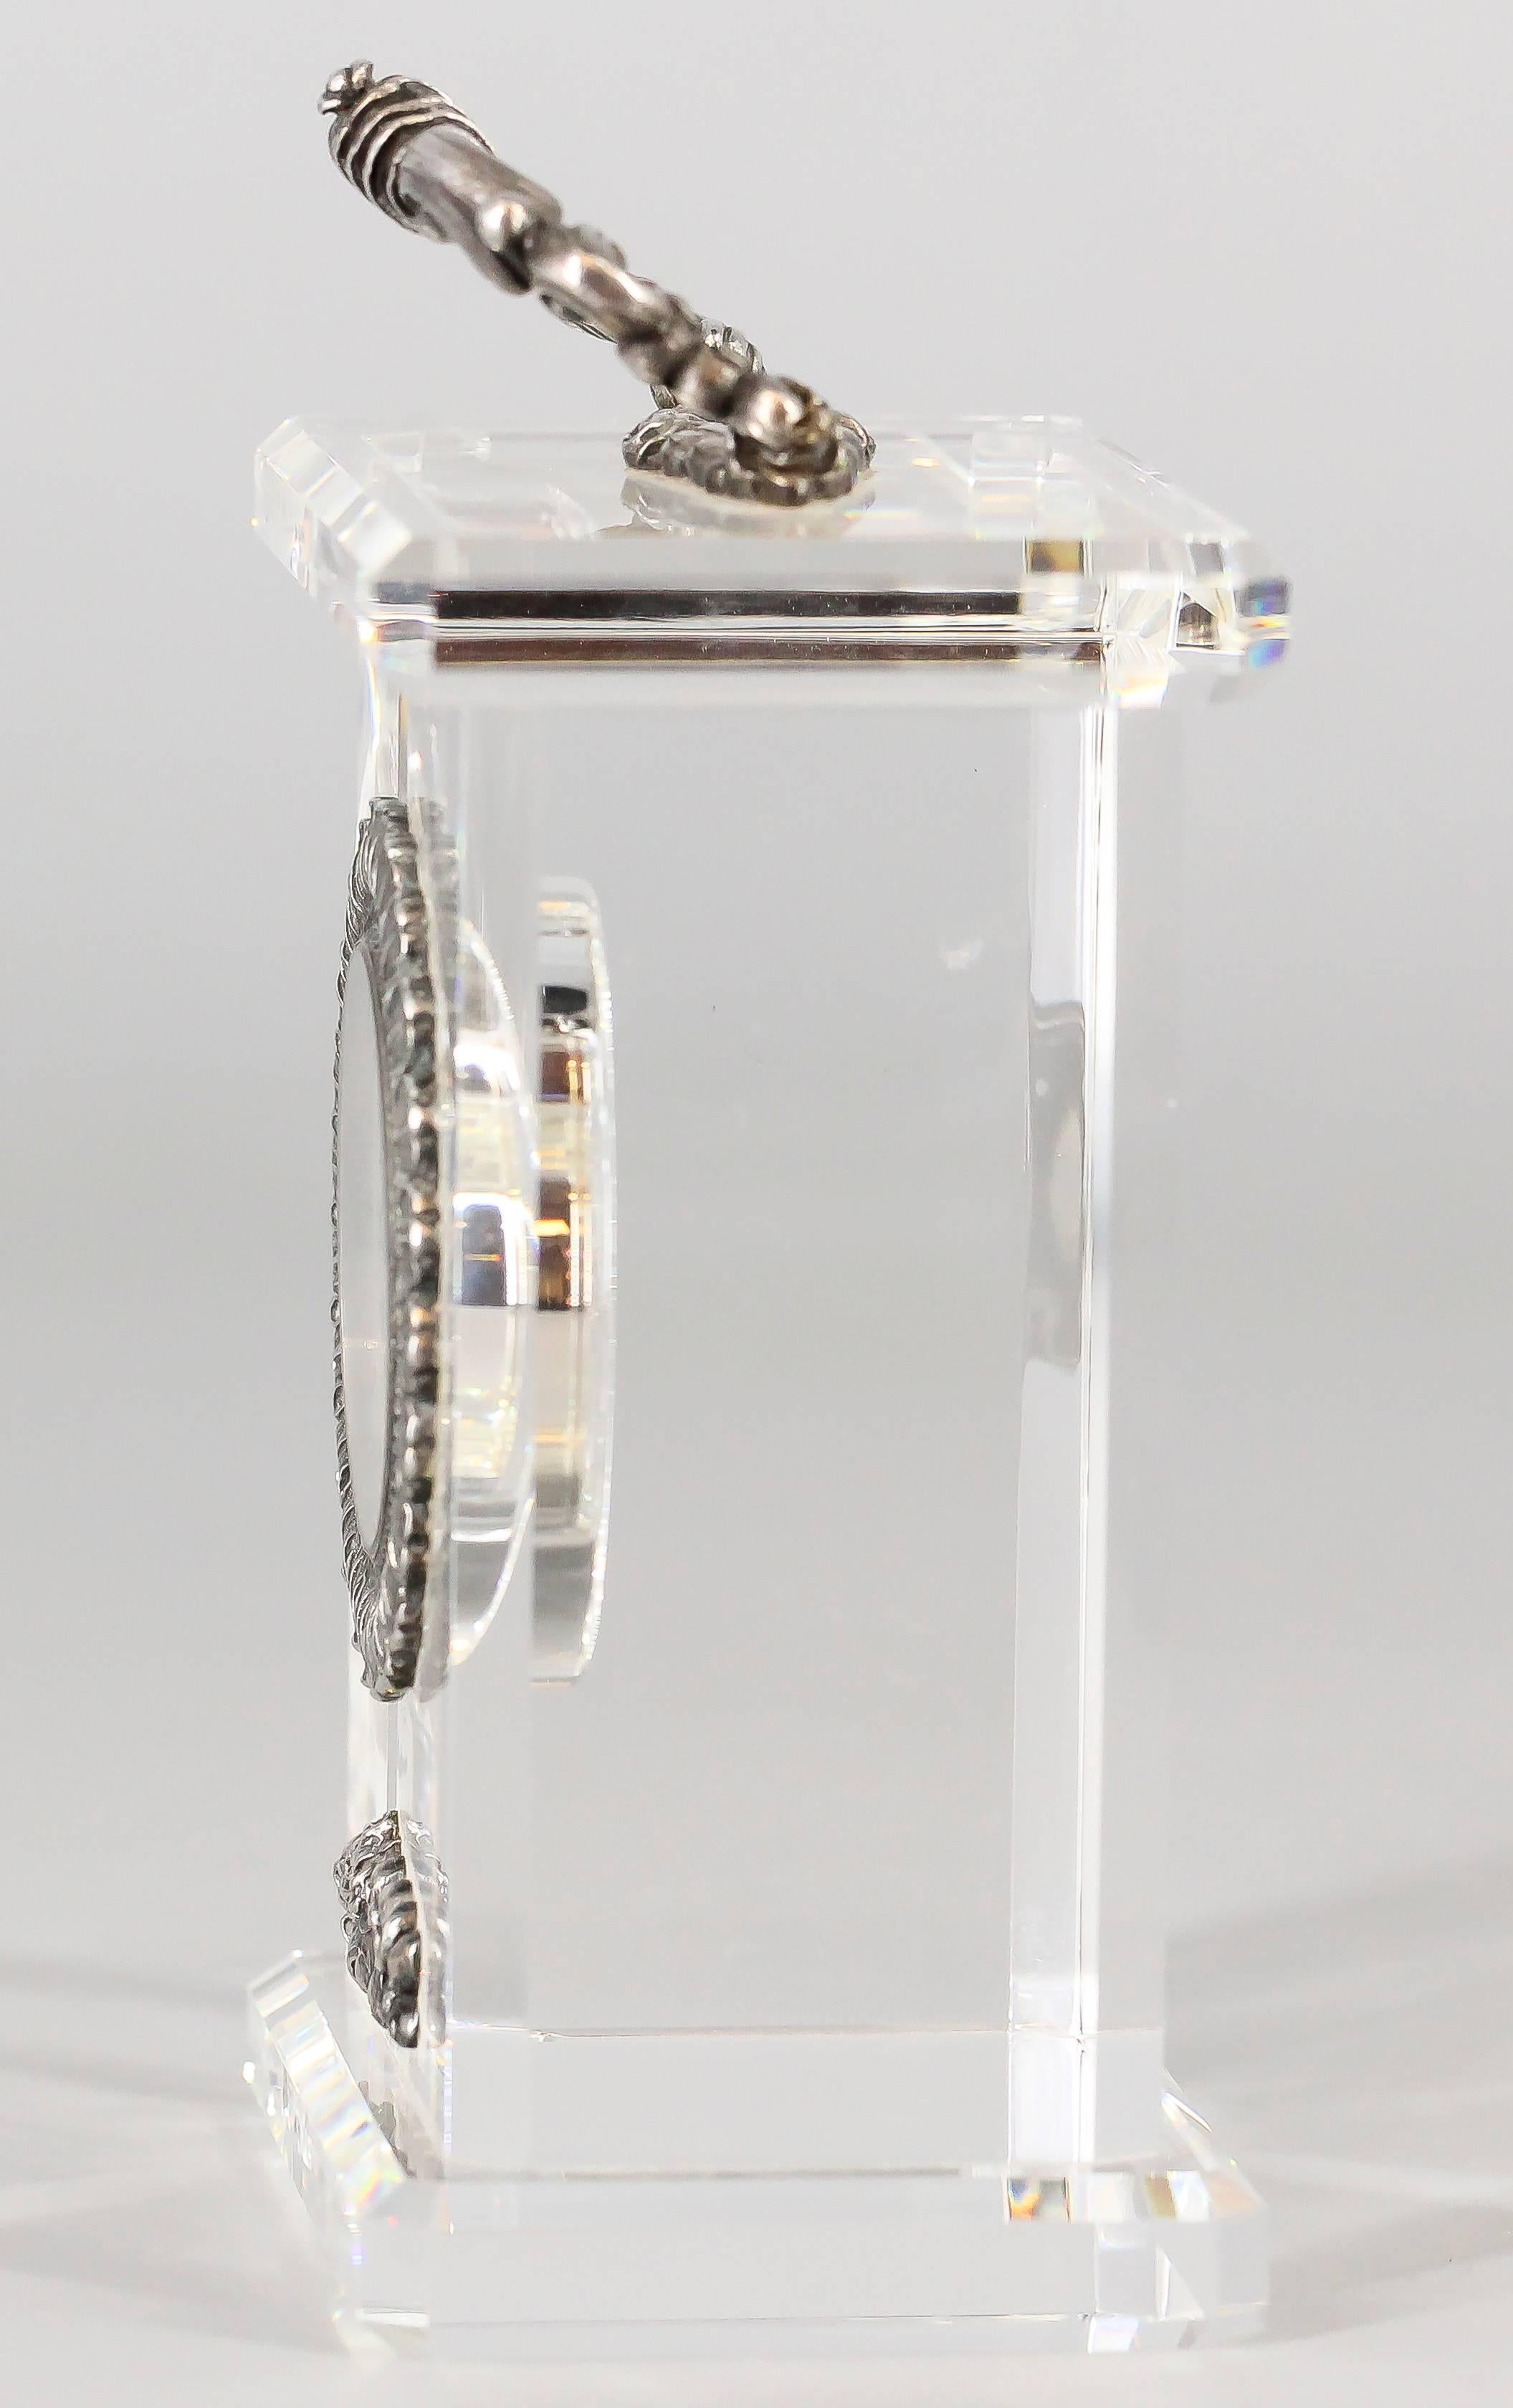 Edle Tischuhr aus Sterlingsilber und Bergkristall in limitierter Auflage von Buccellati. Sie zeichnet sich durch ein wunderschönes Design aus, das aus klarem Bergkristall mit Griff und Akzenten aus Sterlingsilber sowie der Lünette der Uhr besteht. 